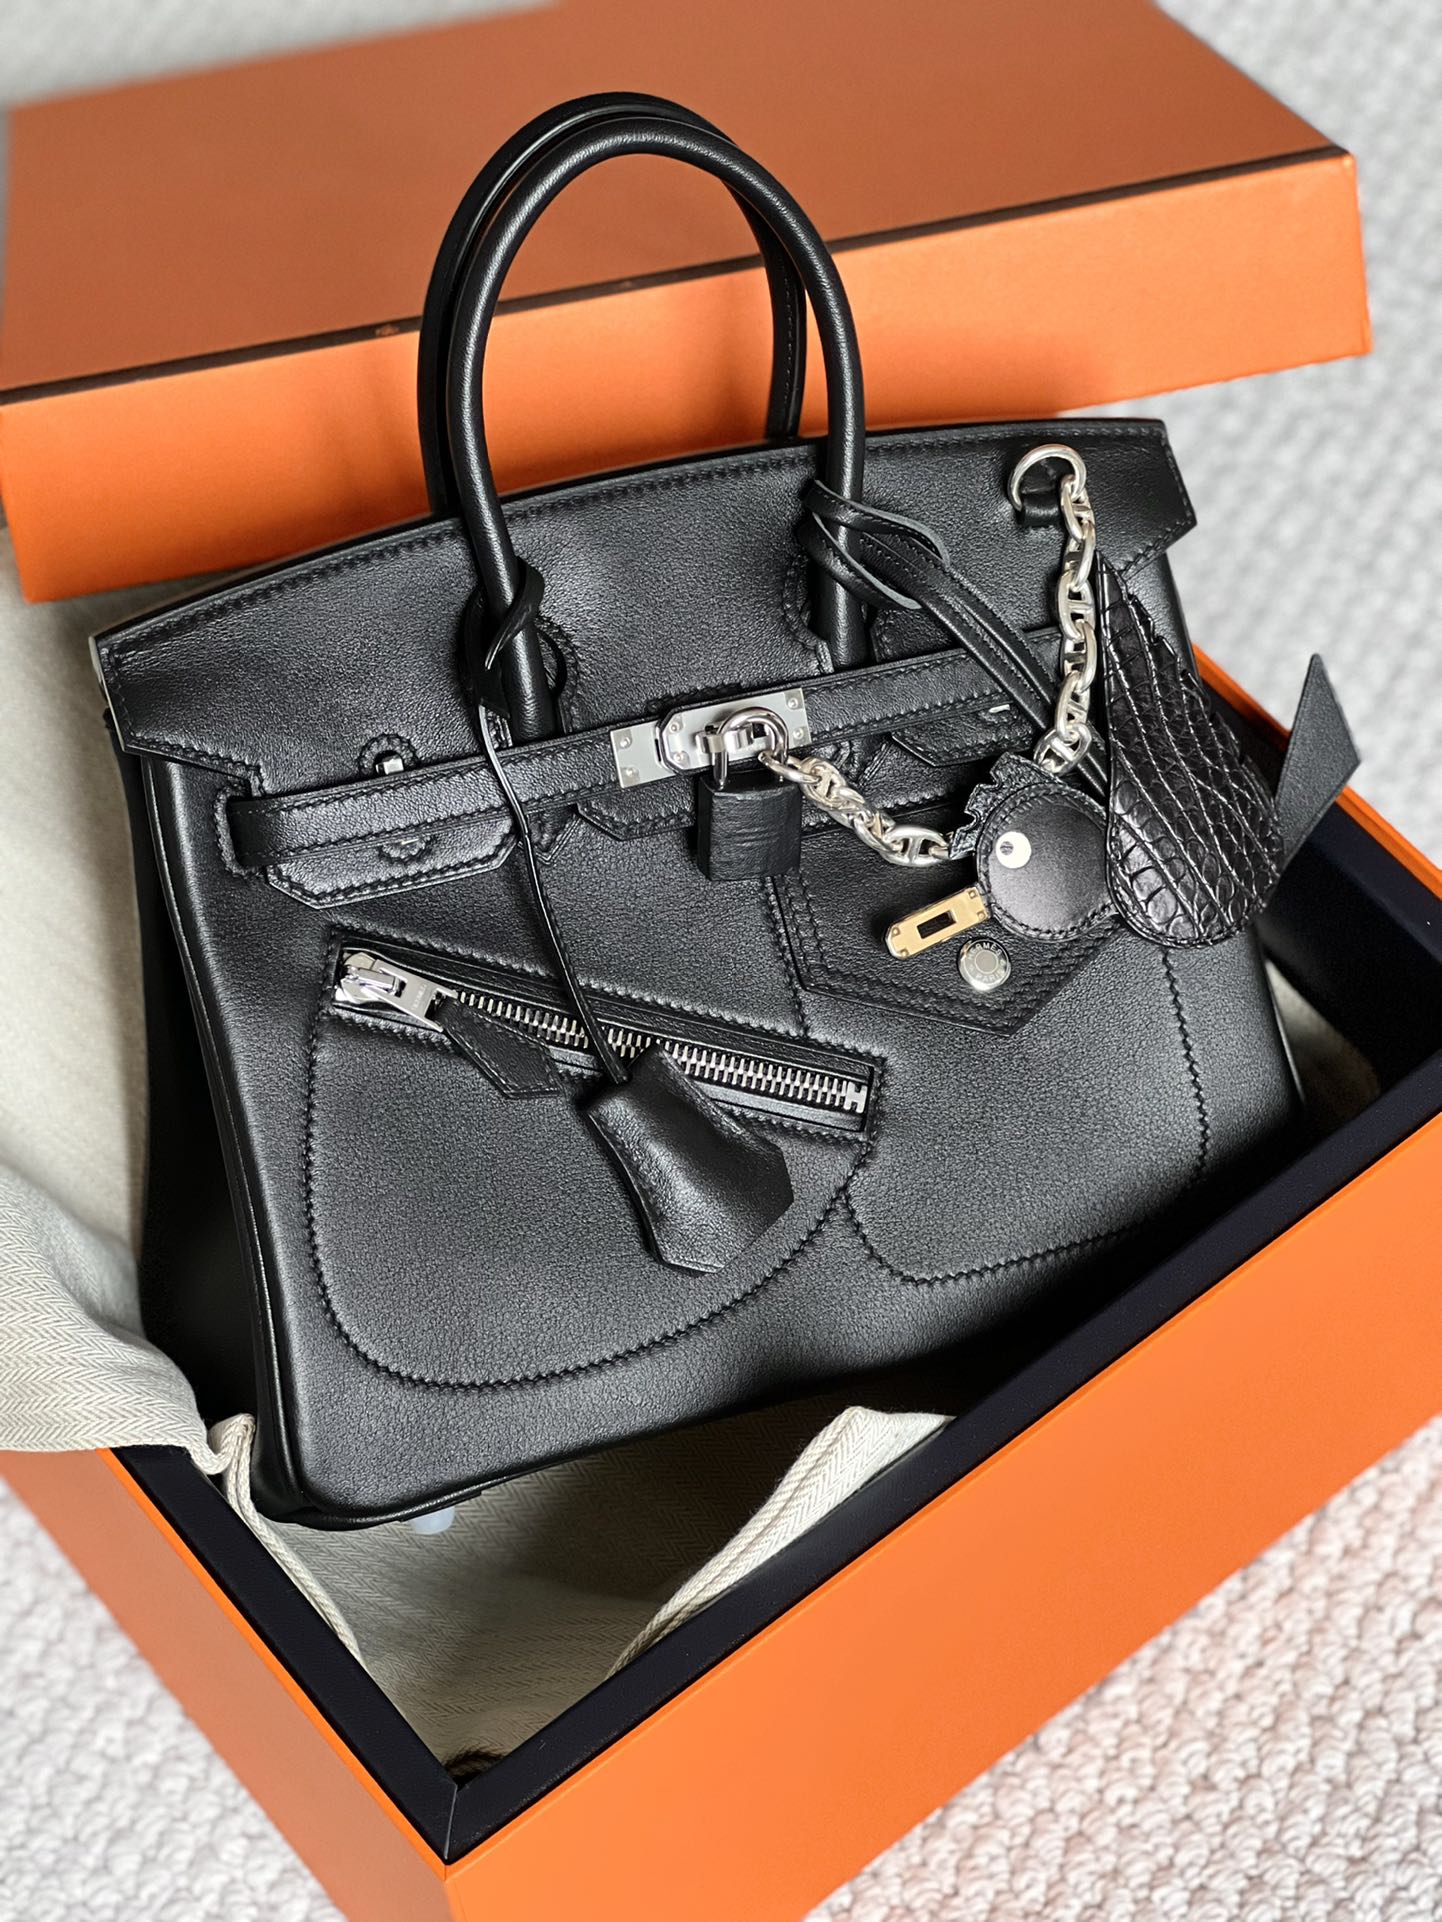 Hermes Birkin Bags Handbags Hot Sale
 Sewing